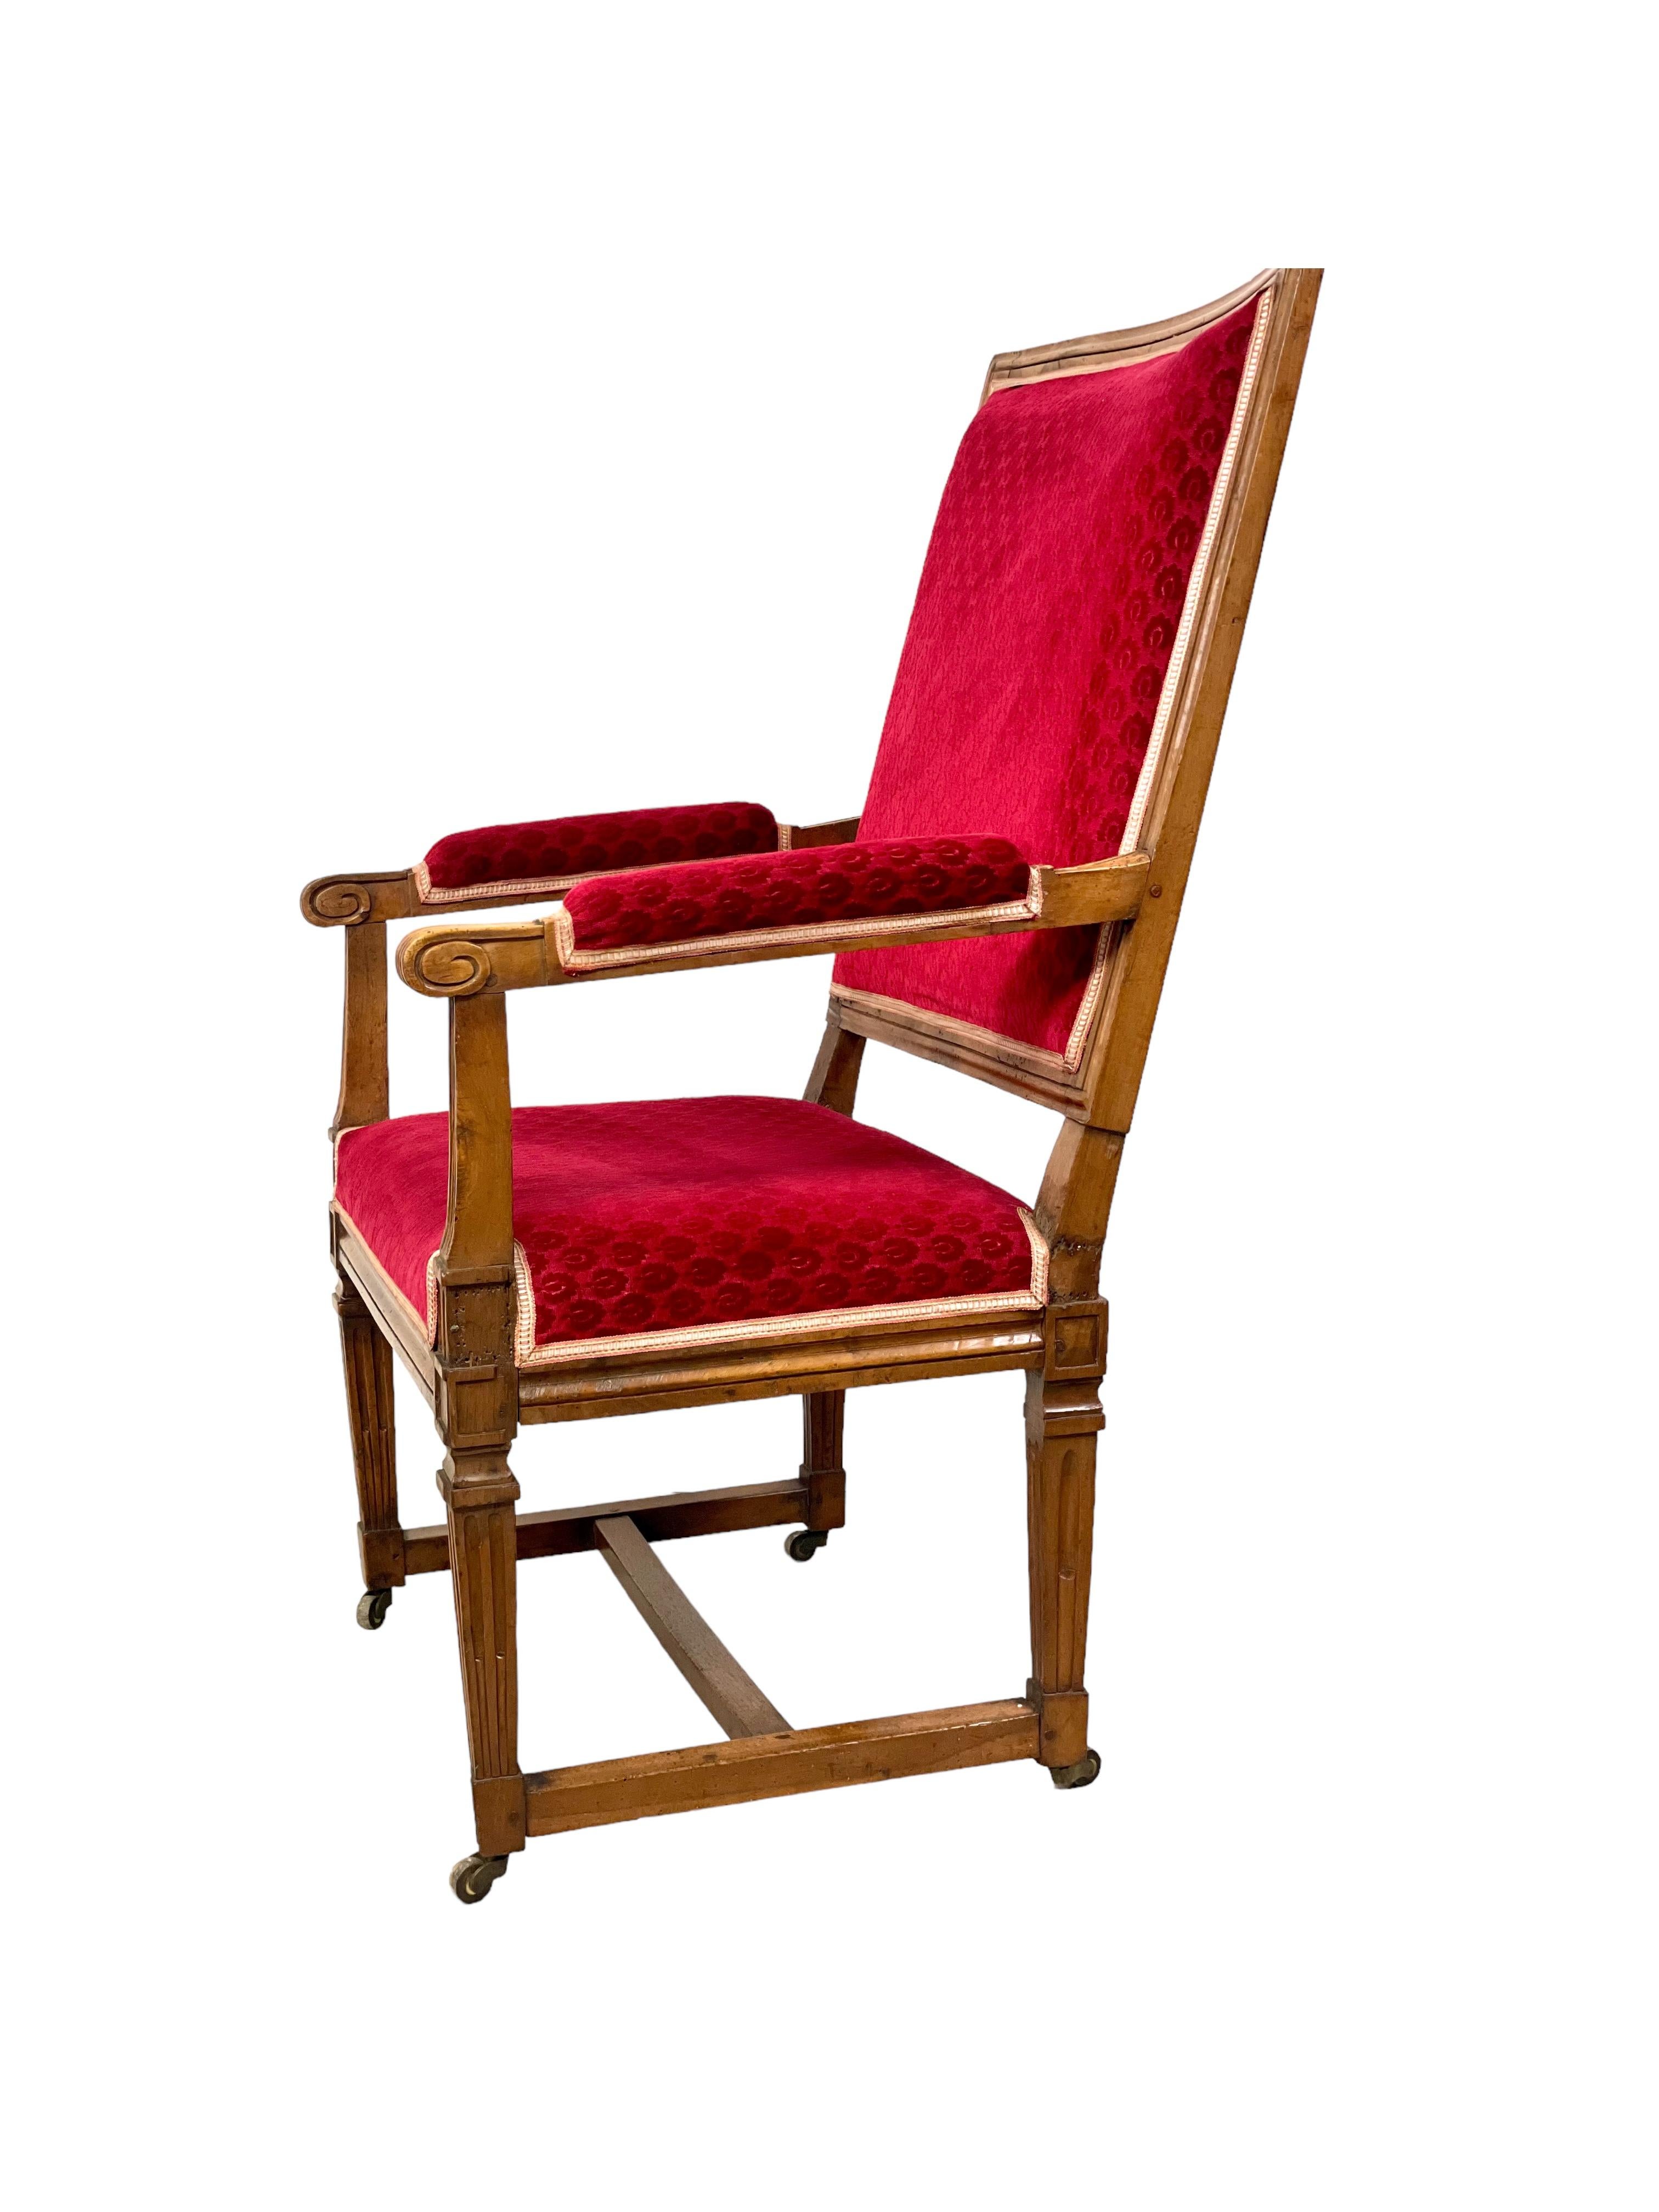 Ce fauteuil français ancien, extrêmement confortable, est un merveilleux exemple du style Louis XVI, avec son dossier carré, rembourré et légèrement incliné, ses pieds cannelés et ses accoudoirs ouverts. Sculpté à la main dans du noyer au XVIIIe